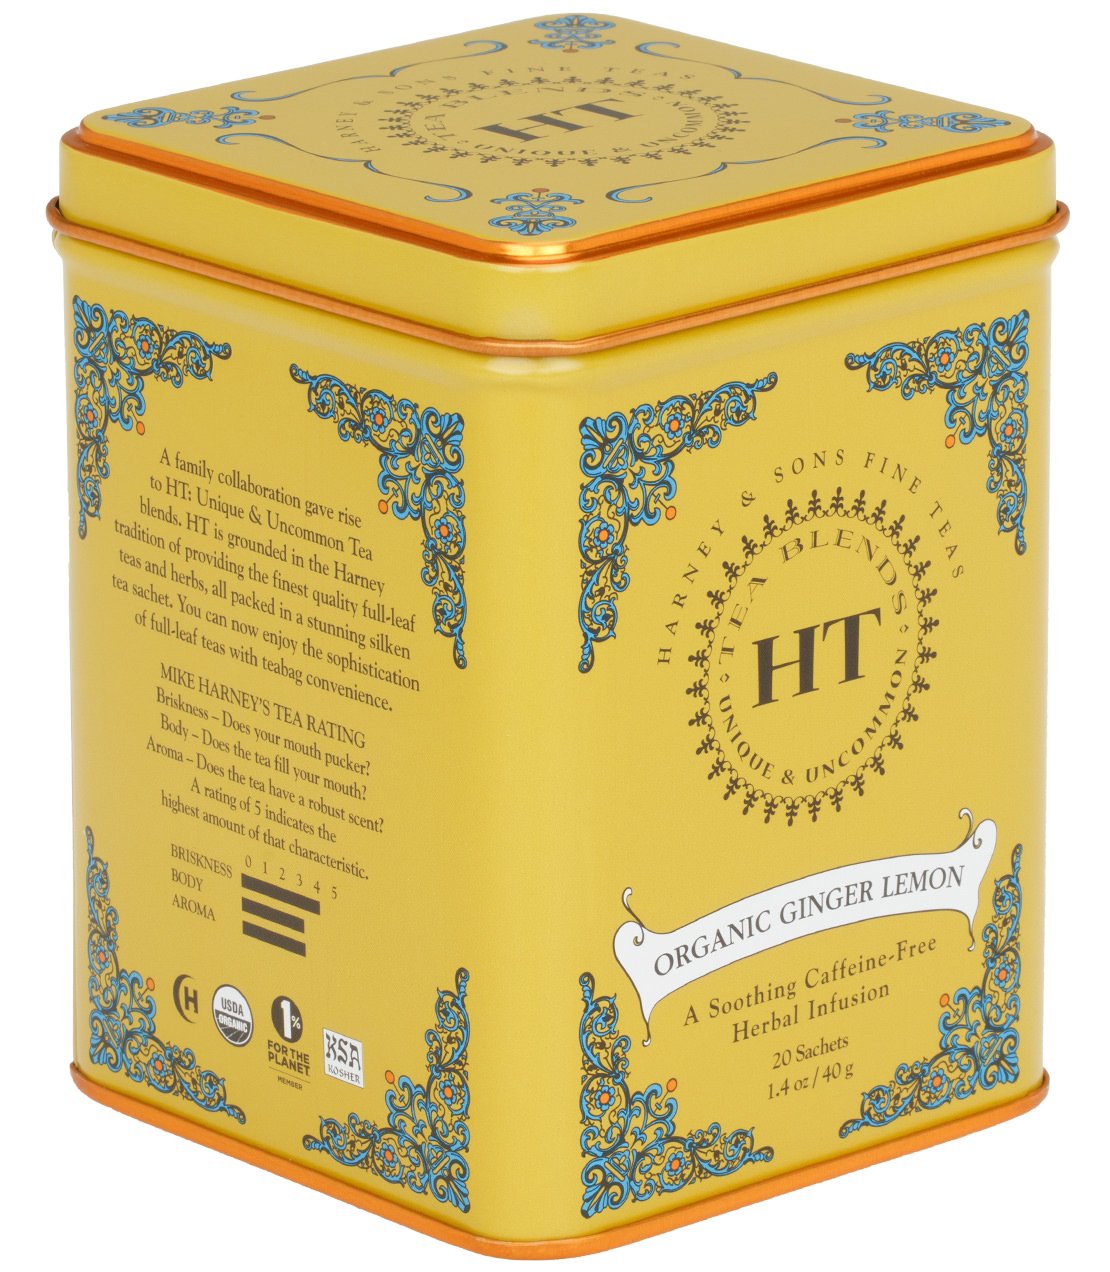 Organic Ginger Lemon - Sachets HT Tin of 20 Sachets - Harney & Sons Fine Teas